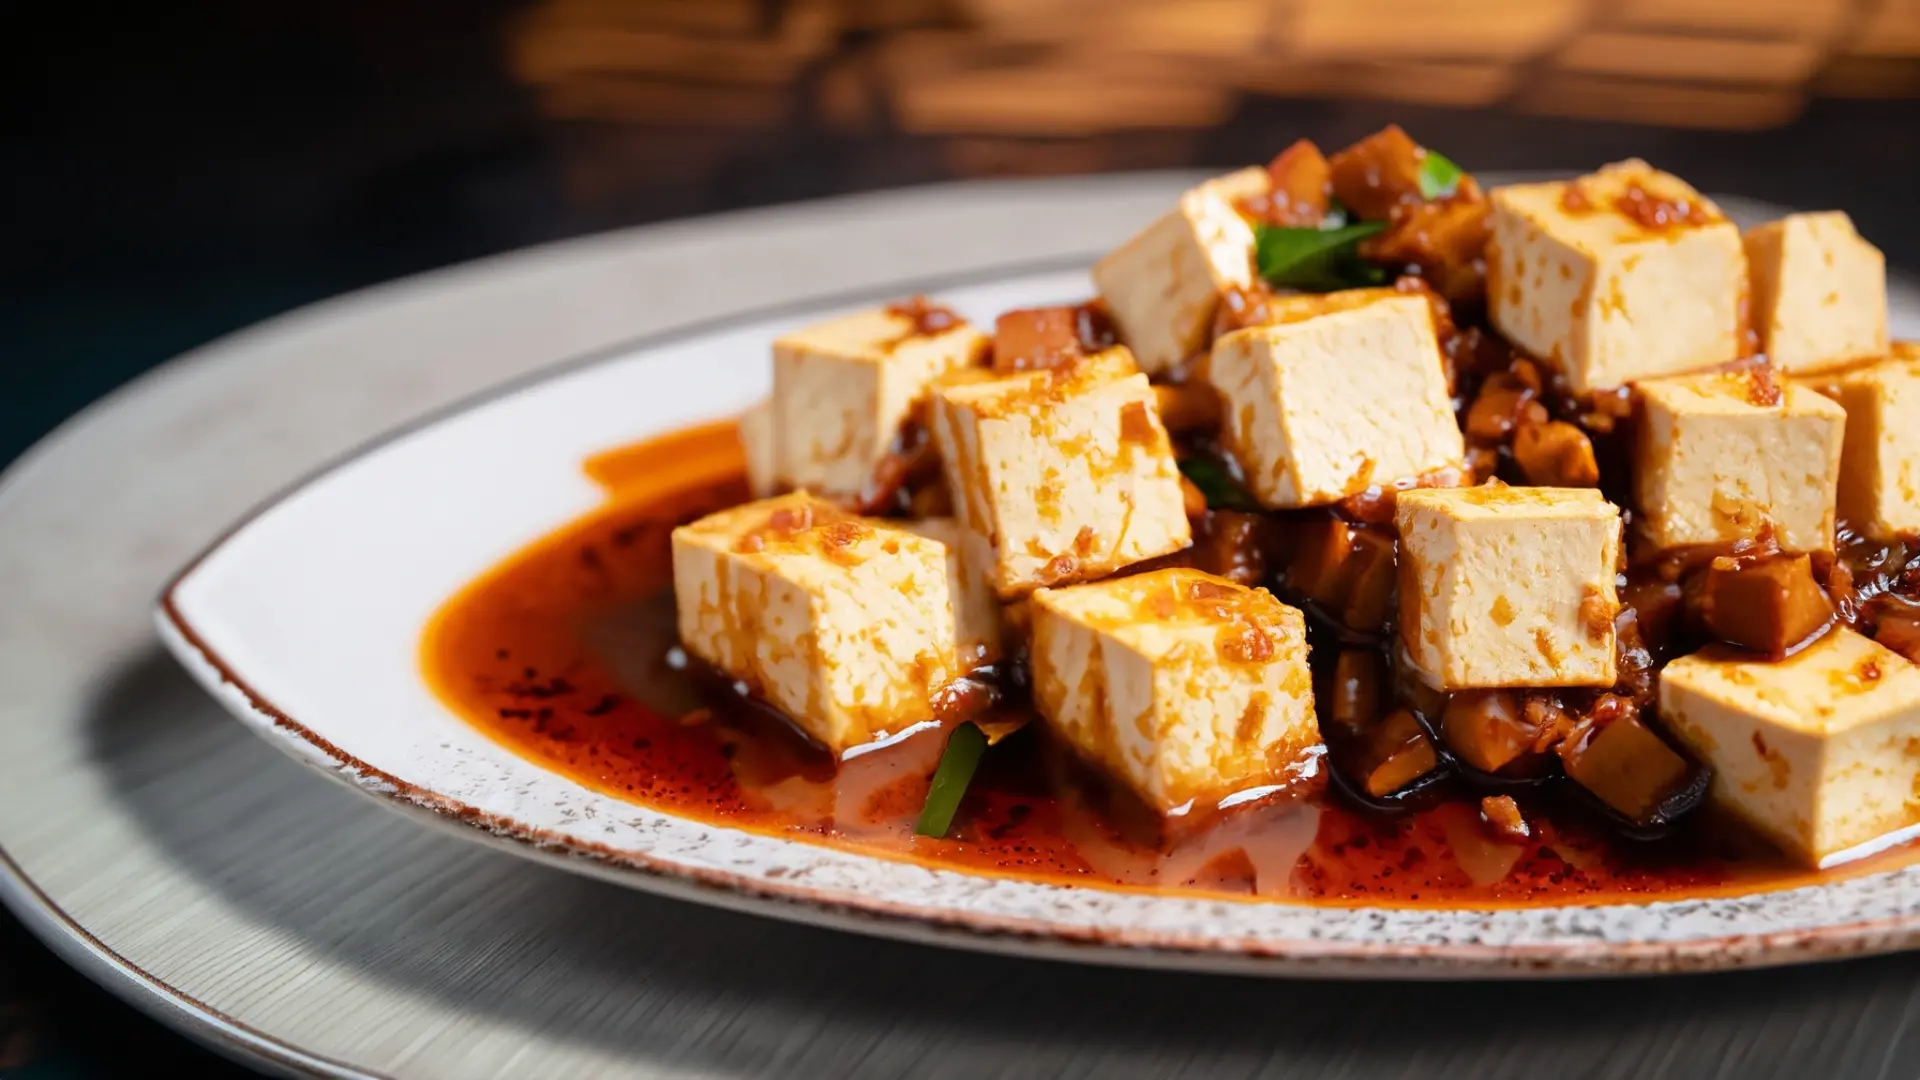 麻婆豆腐 mapo-tofu in chinese style,served on an elegant platter